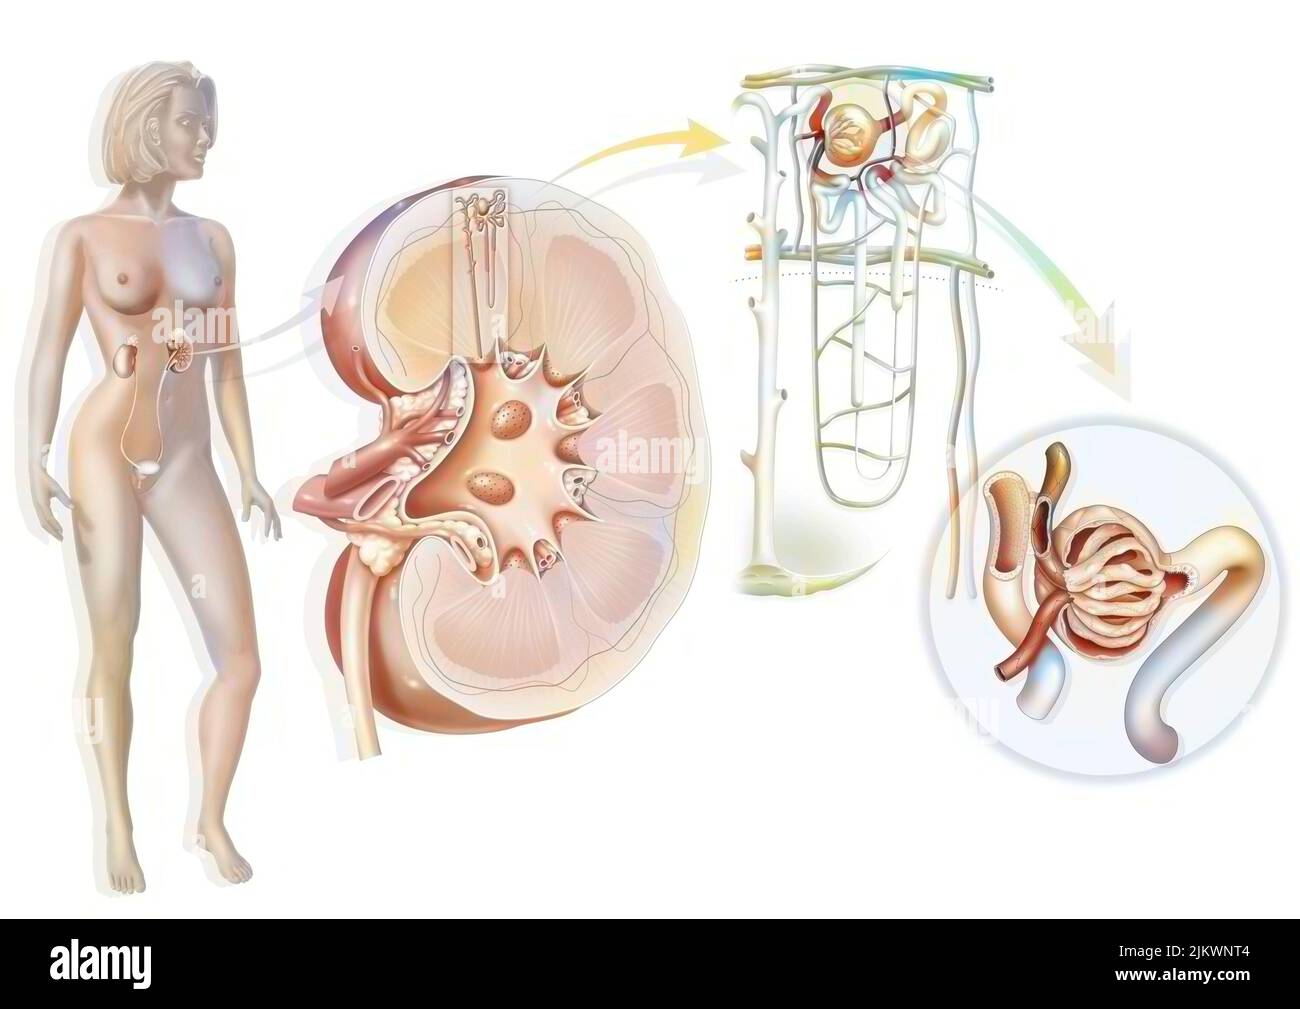 Sistema urinario del riñón al glomérulo con estructuras del riñón y del uréter. Foto de stock